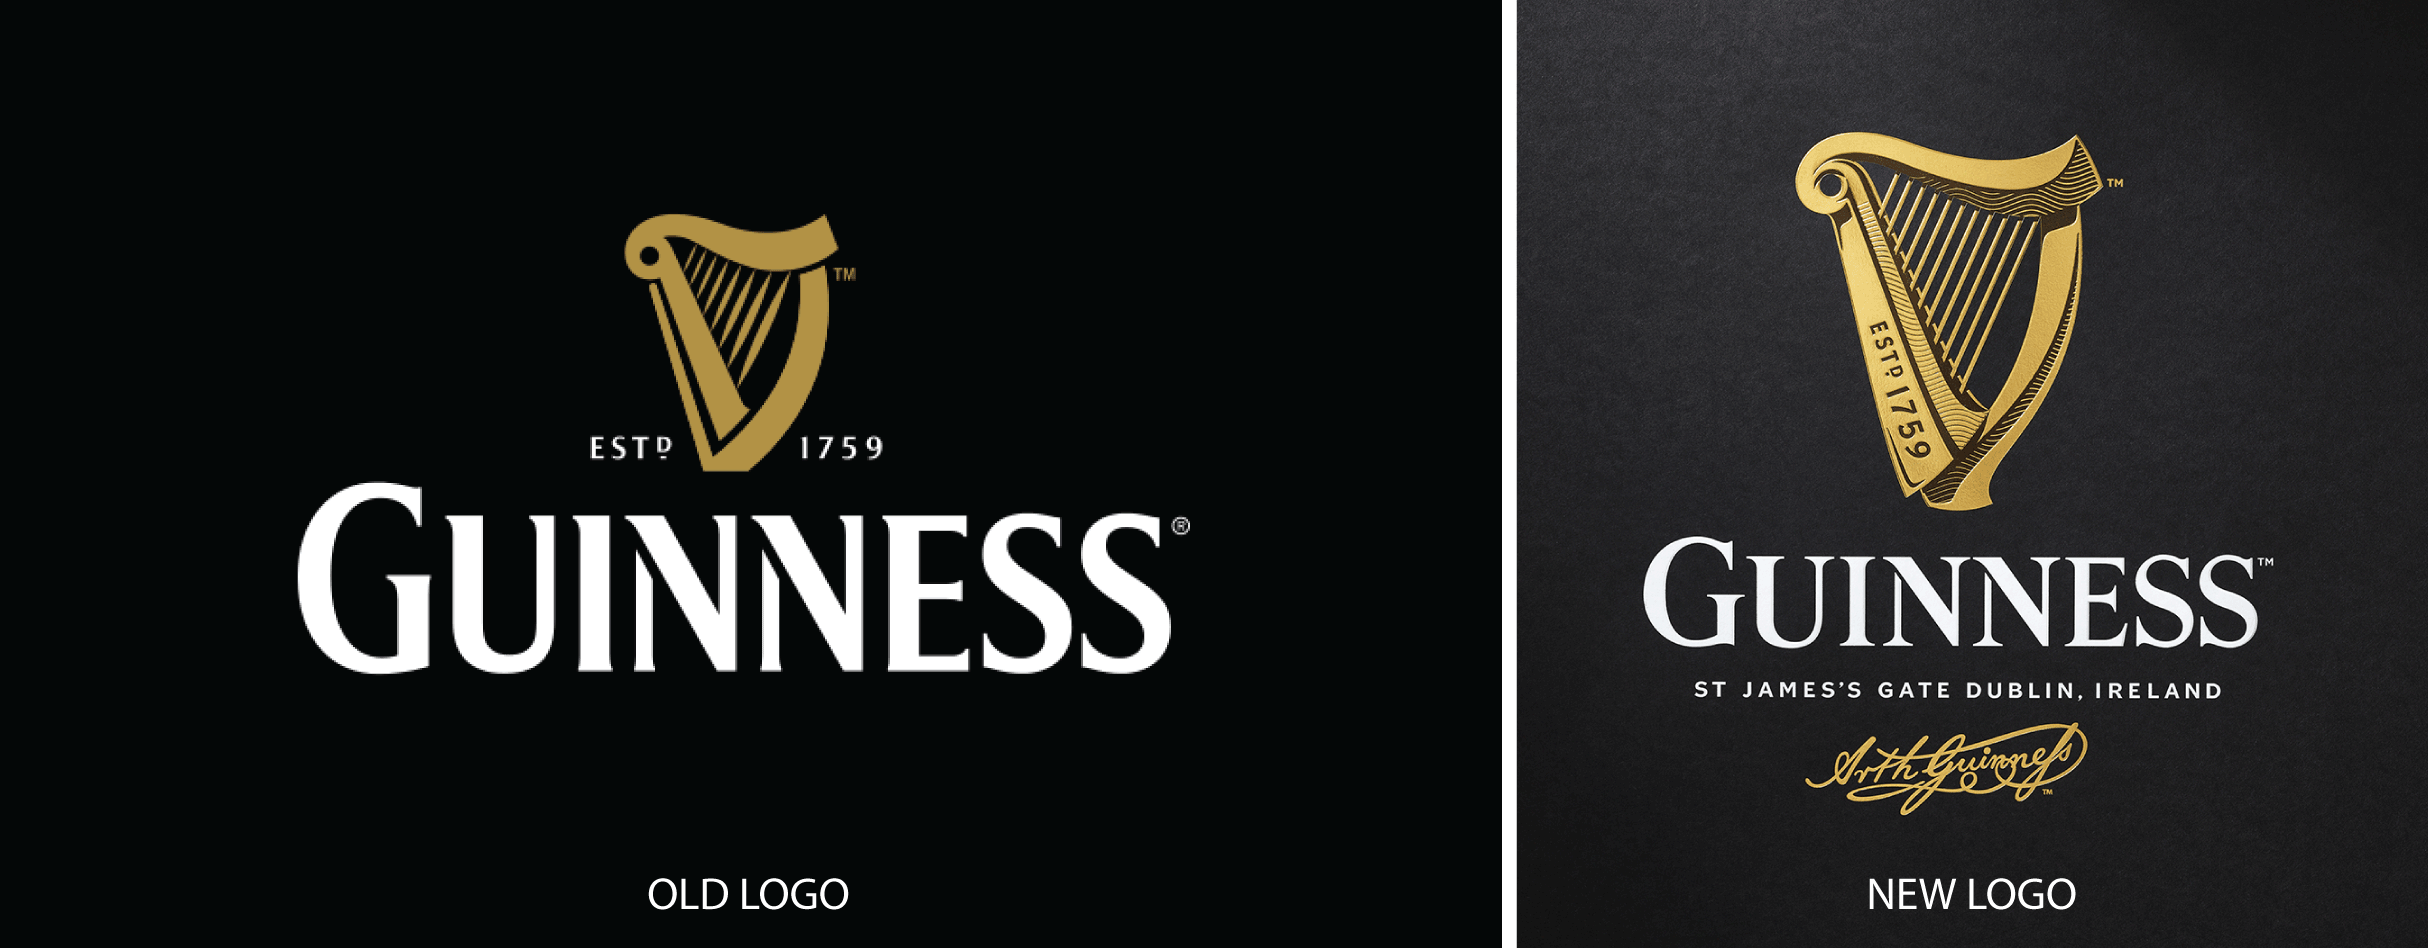 Old Guinness Harp Logo - Guinness Brings History Back | Articles | LogoLounge